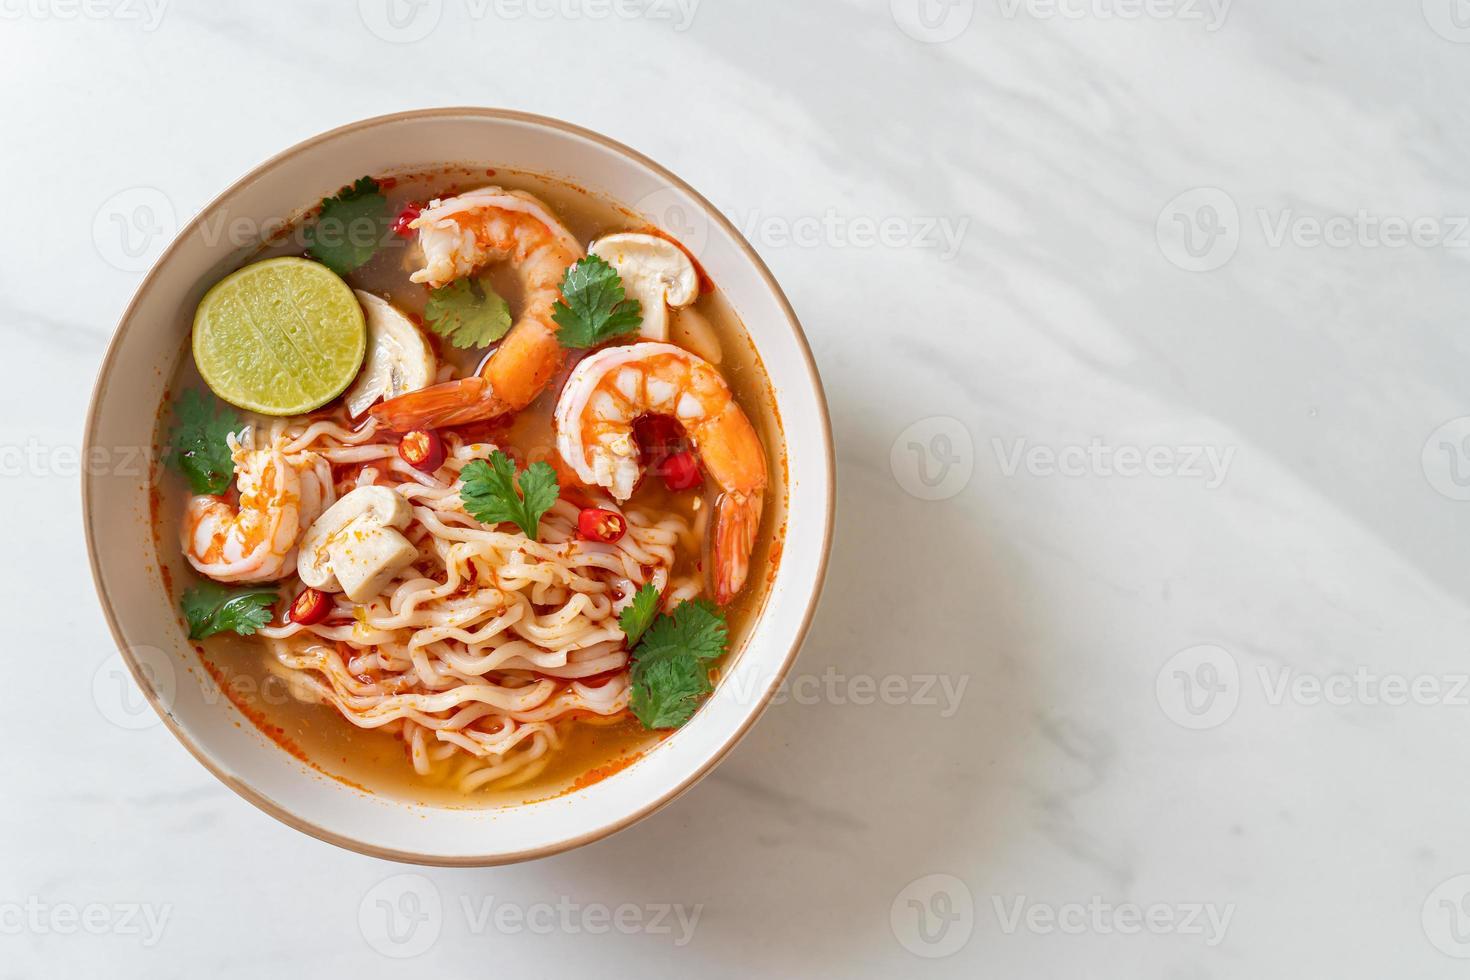 fideos instantáneos ramen en sopa picante con camarones, o tom yum kung - estilo de comida asiática foto